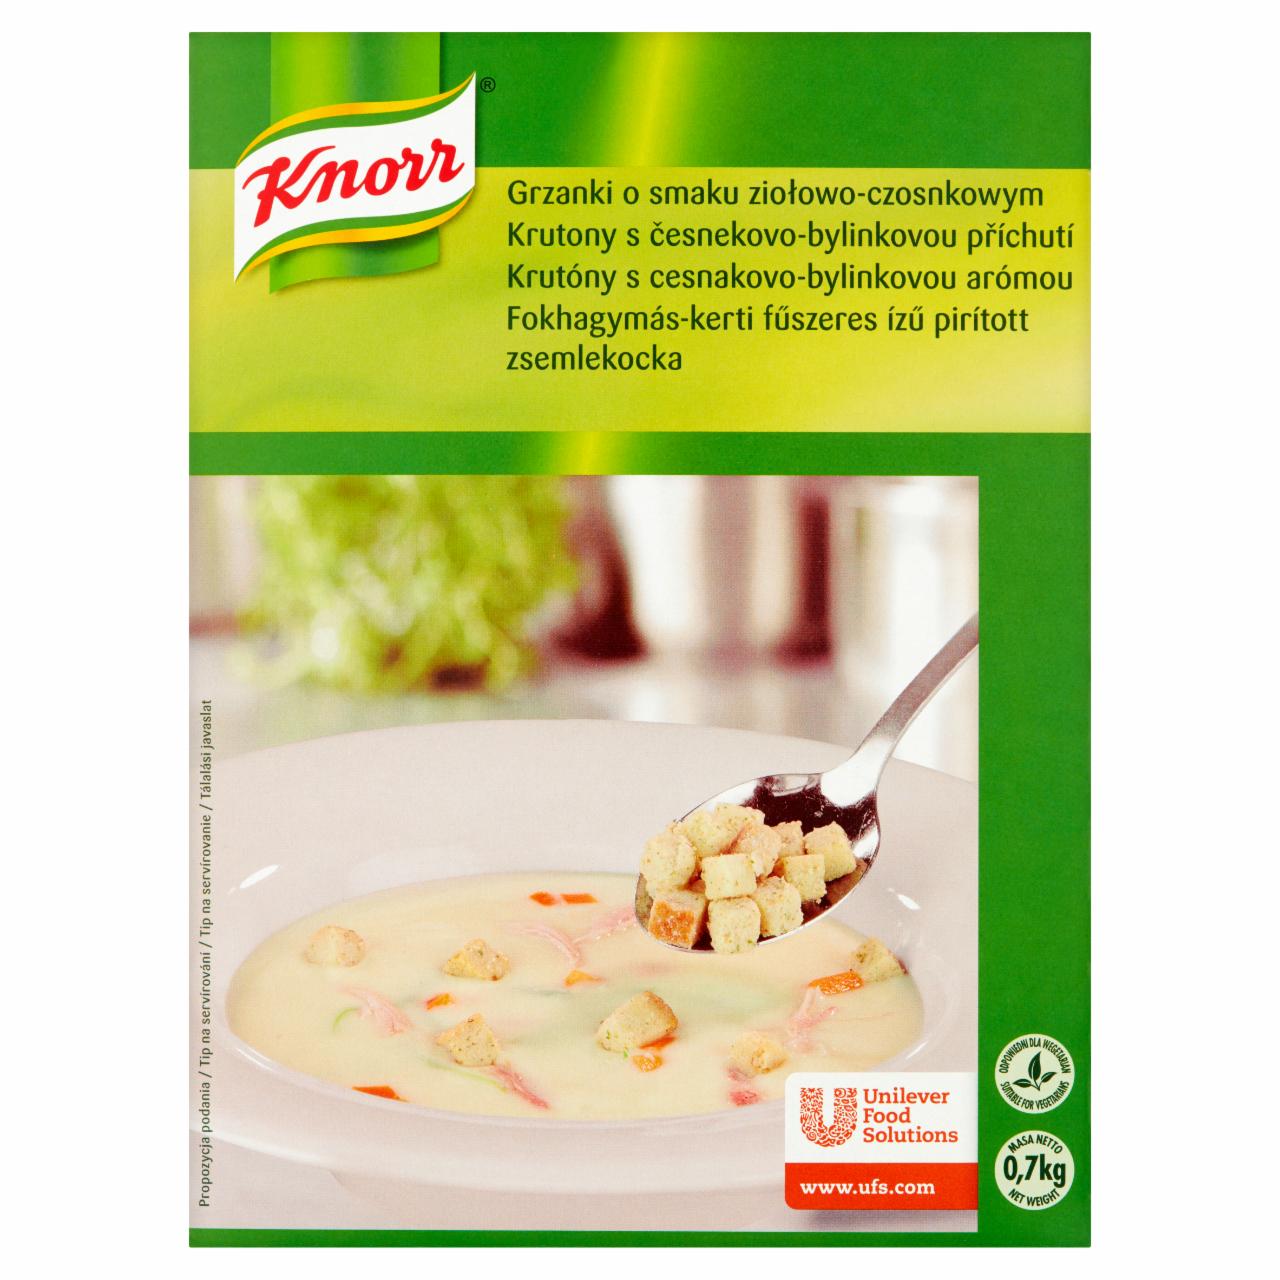 Zdjęcia - Knorr Grzanki o smaku ziołowo-czosnkowym 0,7 kg